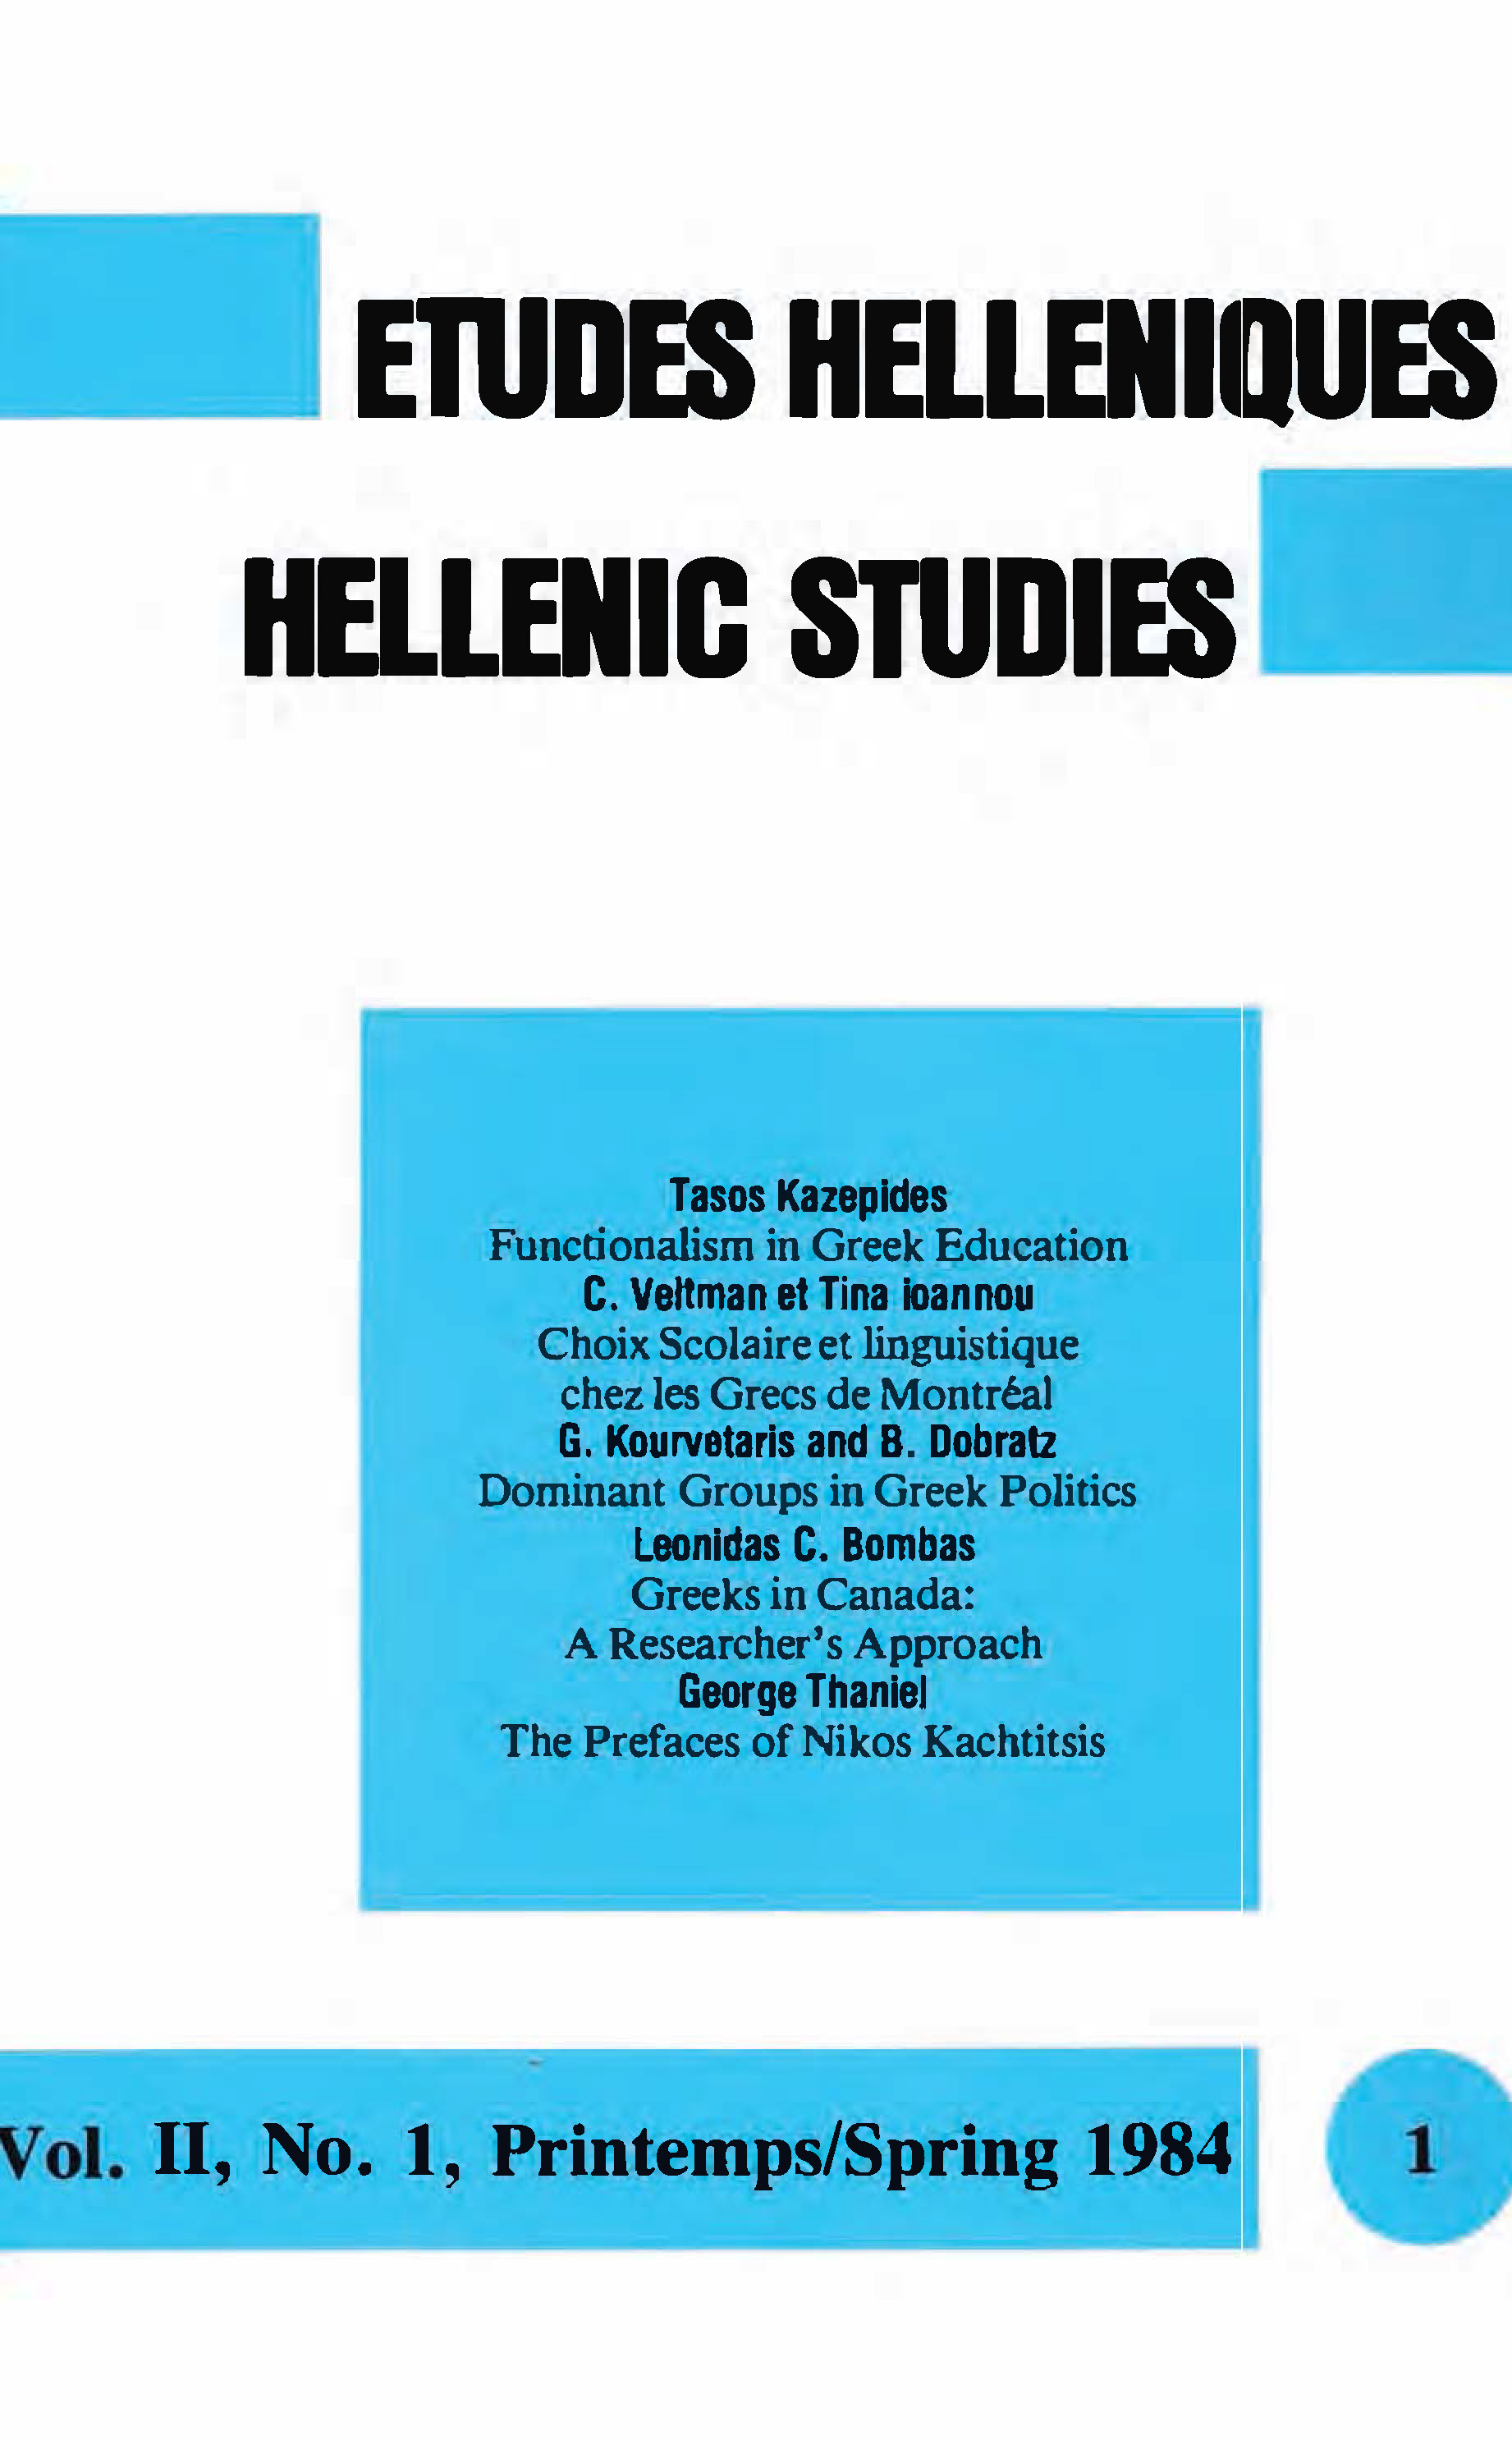 Études helléniques / Hellenic Studies, Volume 2, No 1, 1984, cover